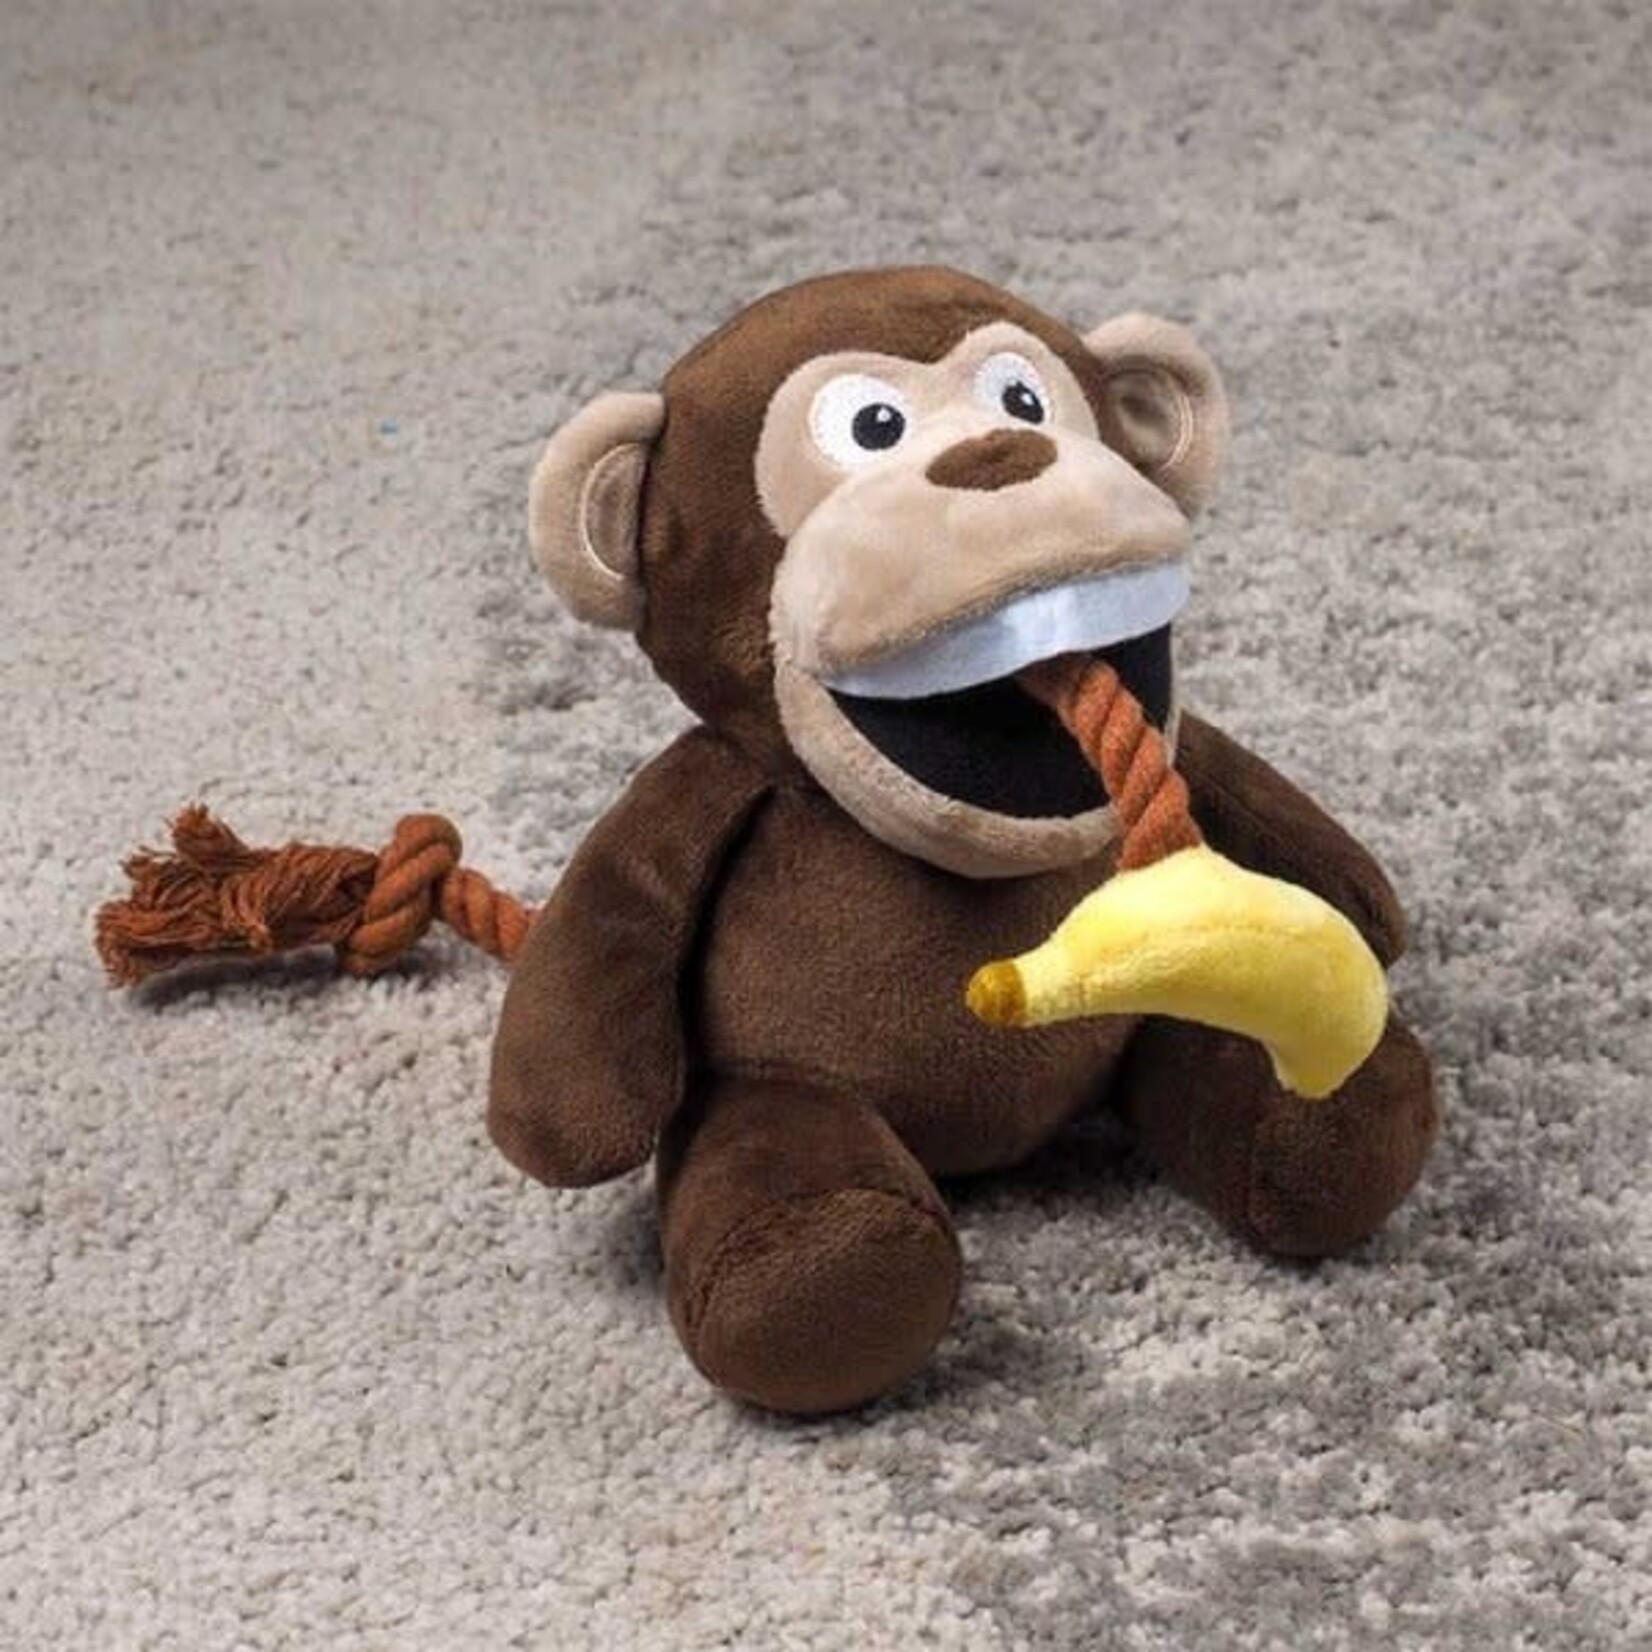 Zöon Chimp Tugga Banana Plush Dog Toy